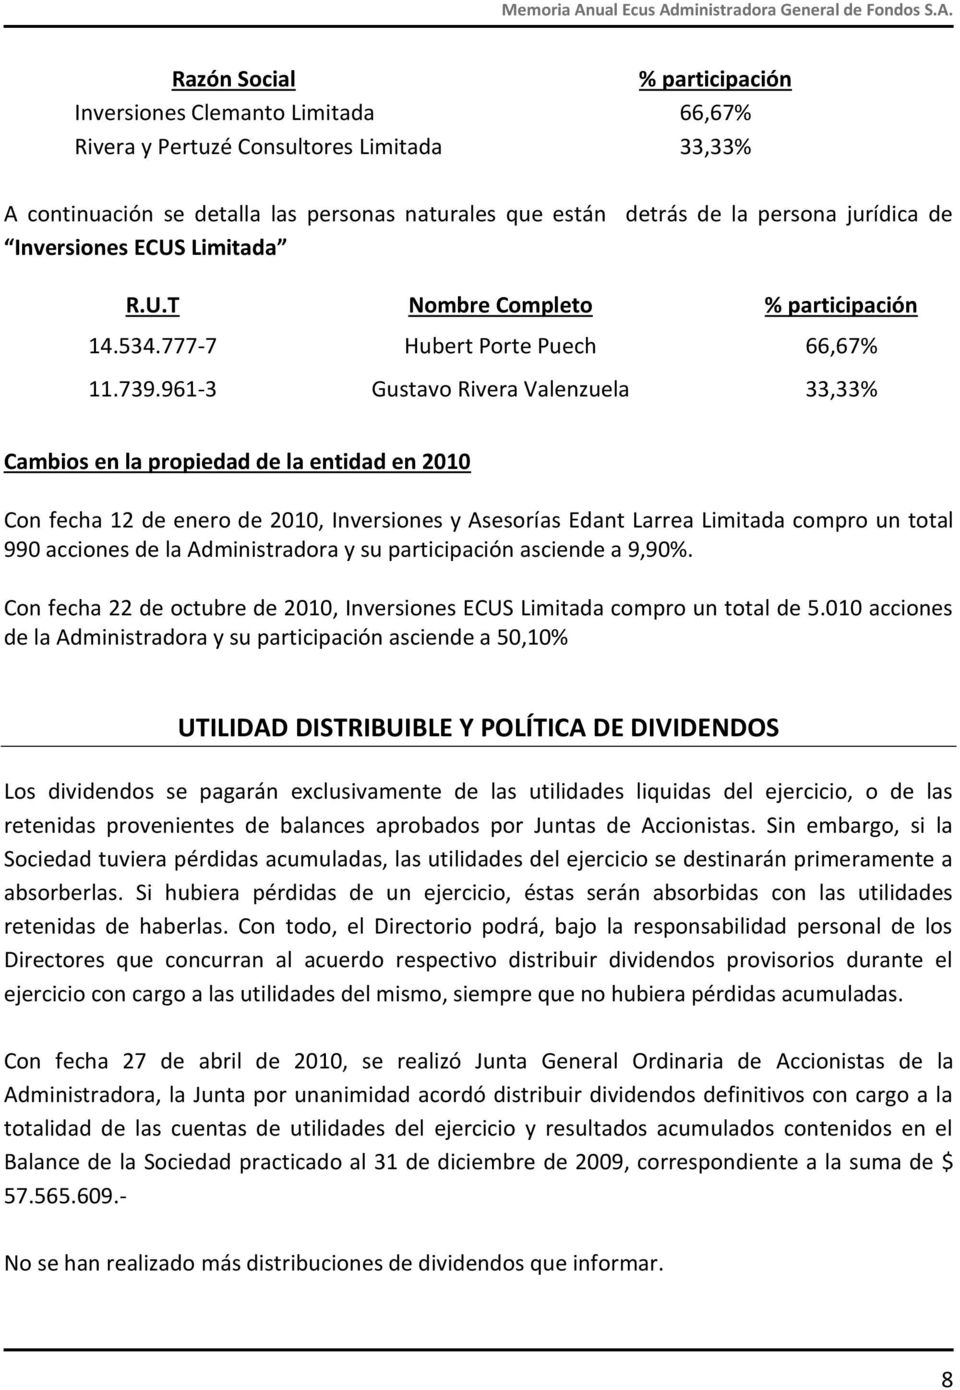 961-3 Gustavo Rivera Valenzuela 33,33% Cambios en la propiedad de la entidad en 2010 Con fecha 12 de enero de 2010, Inversiones y Asesorías Edant Larrea Limitada compro un total 990 acciones de la